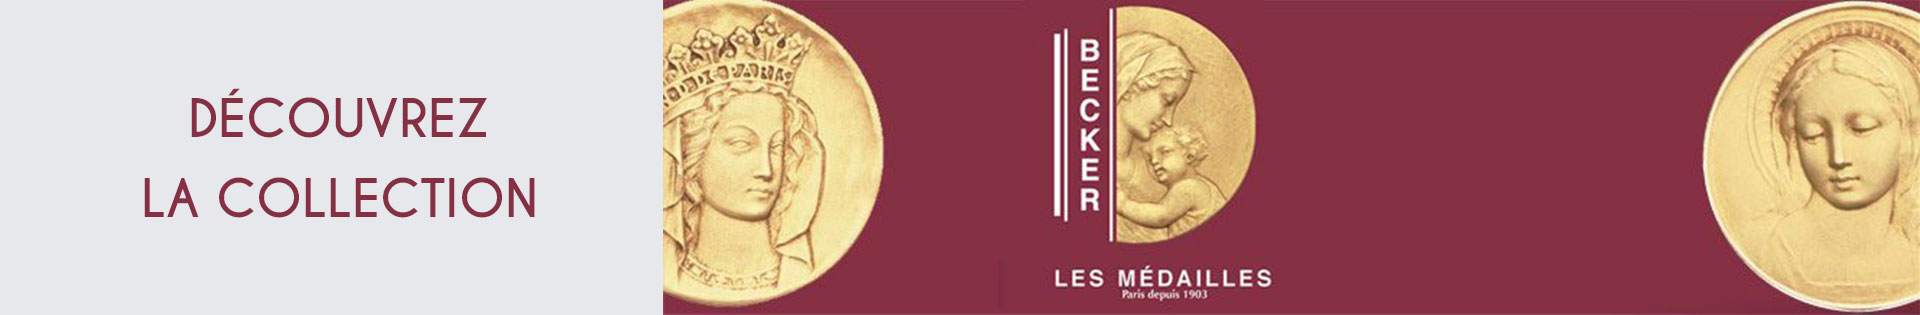 Médaille et symbole - Becker